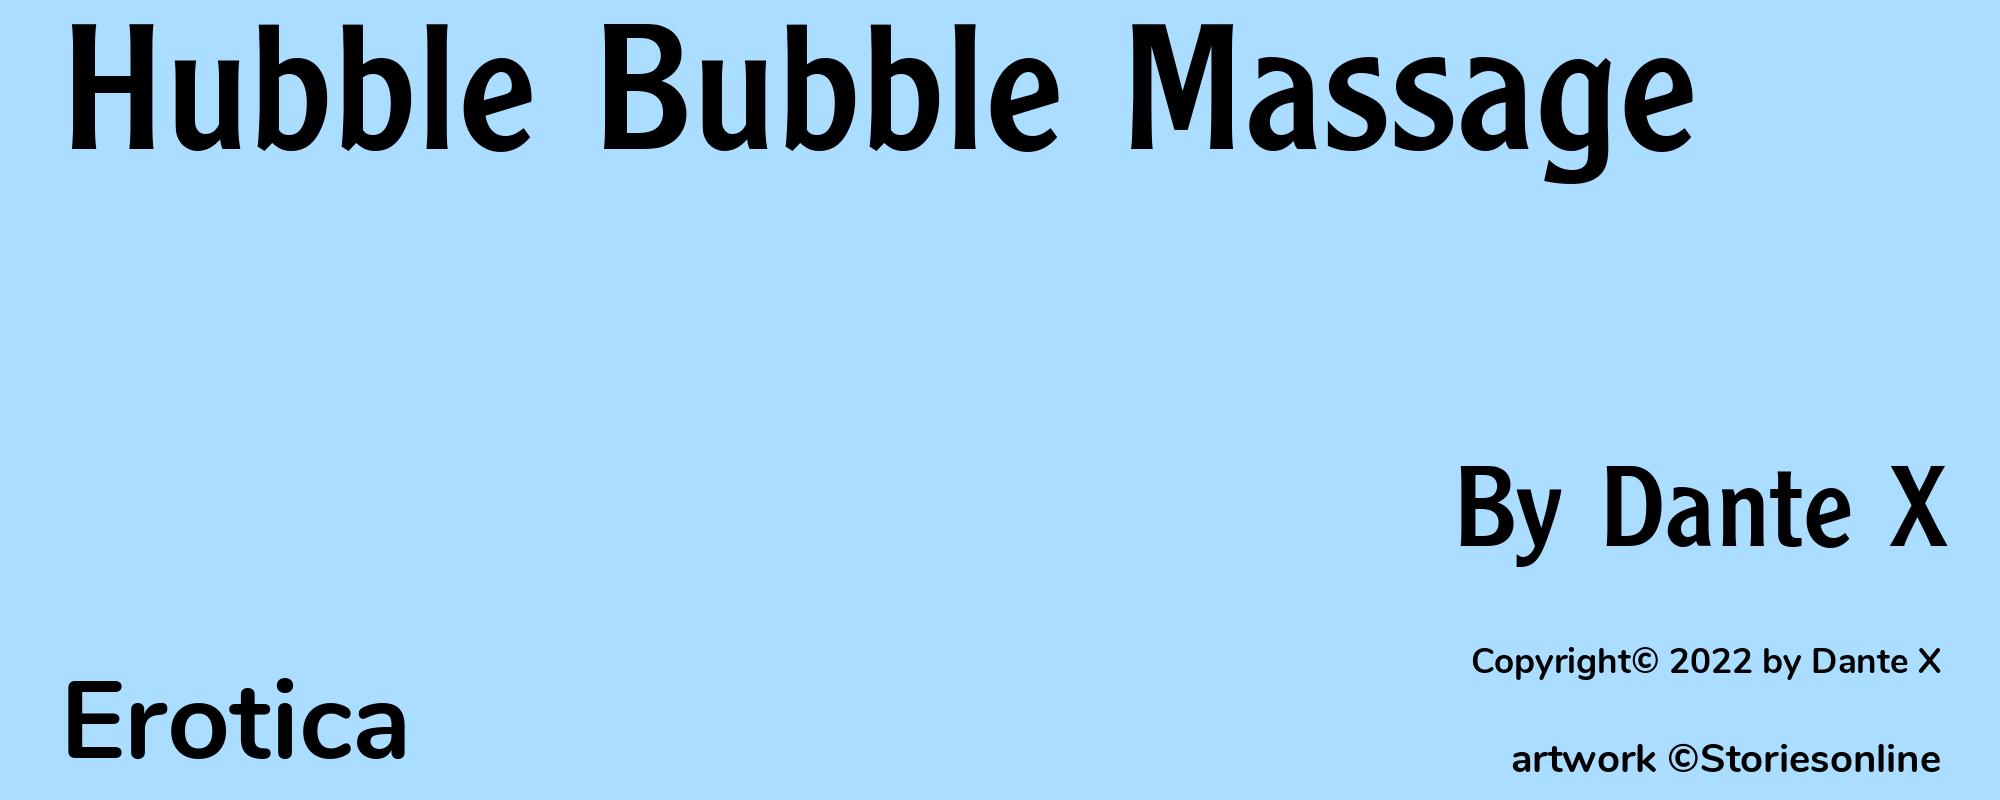 Hubble Bubble Massage - Cover